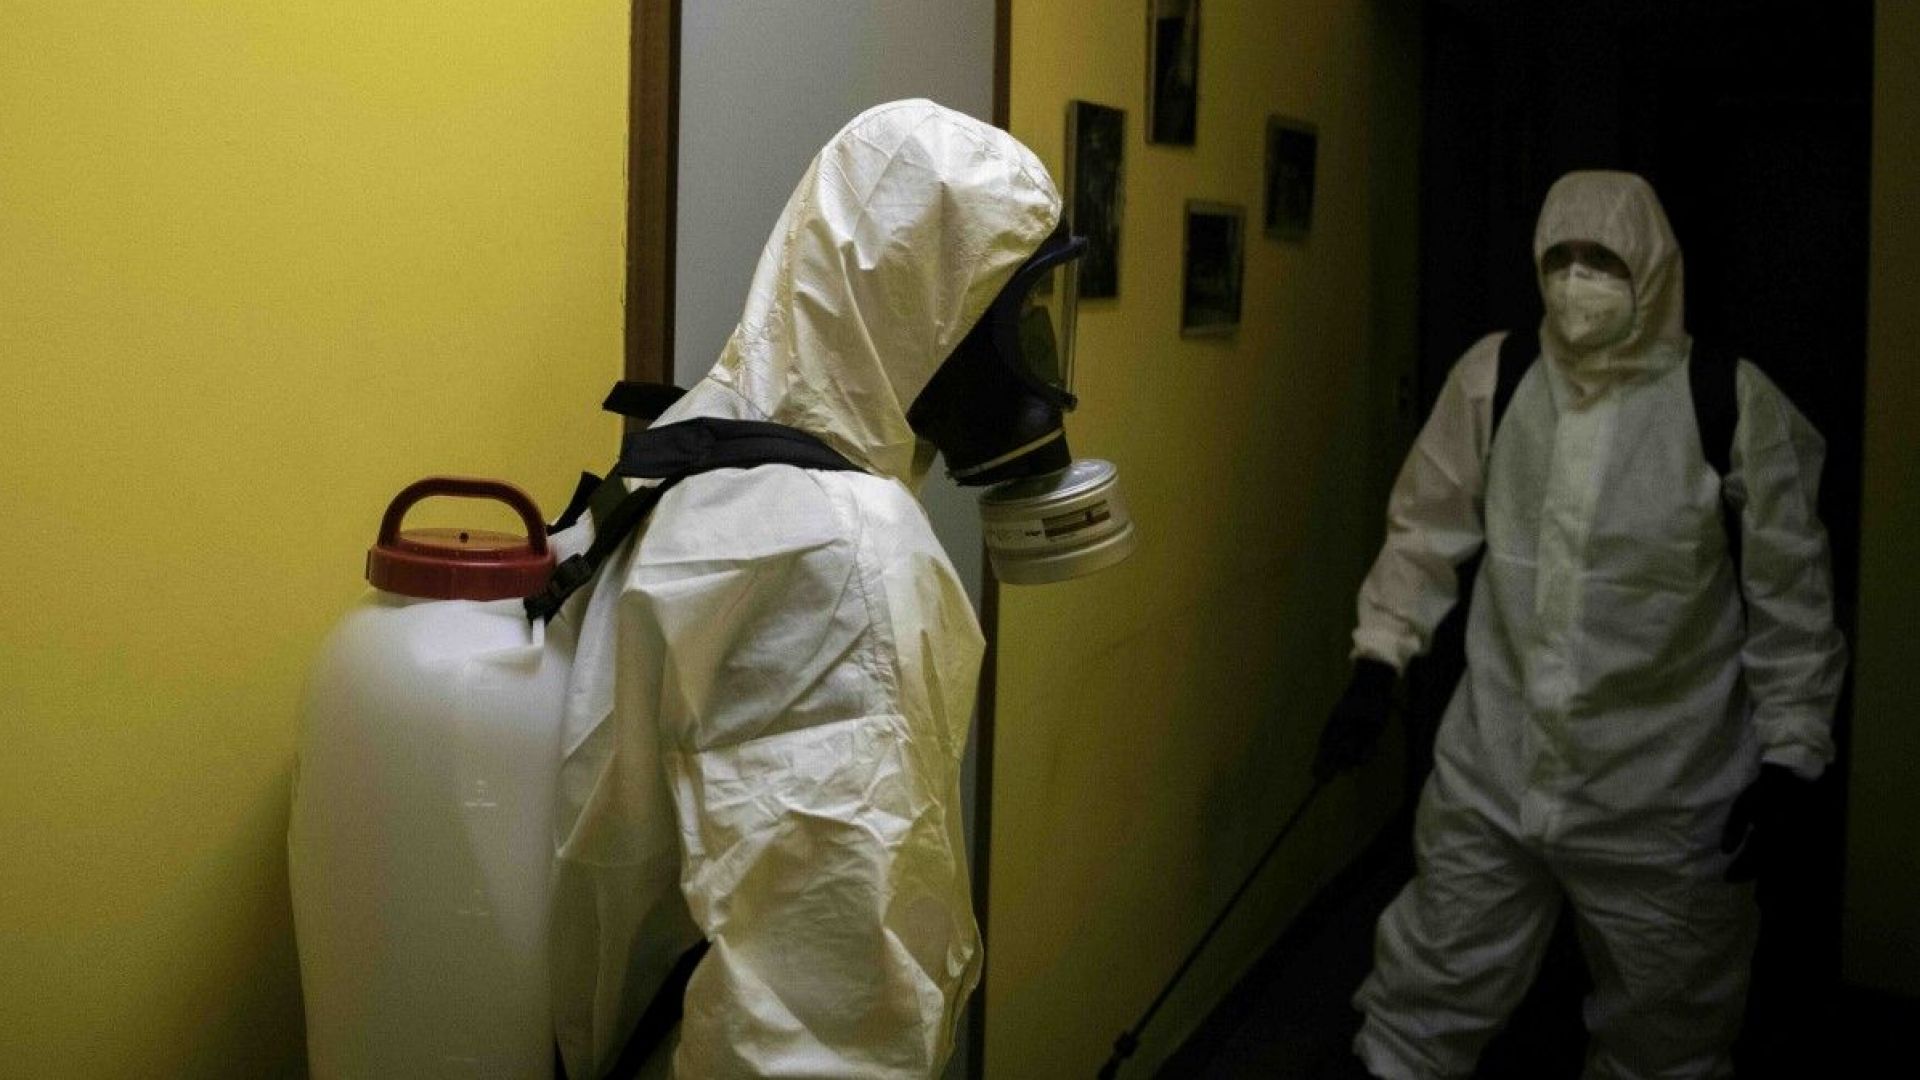 Правителството на Италия ще смекчи ограничителните мерки въведени заради пандемията